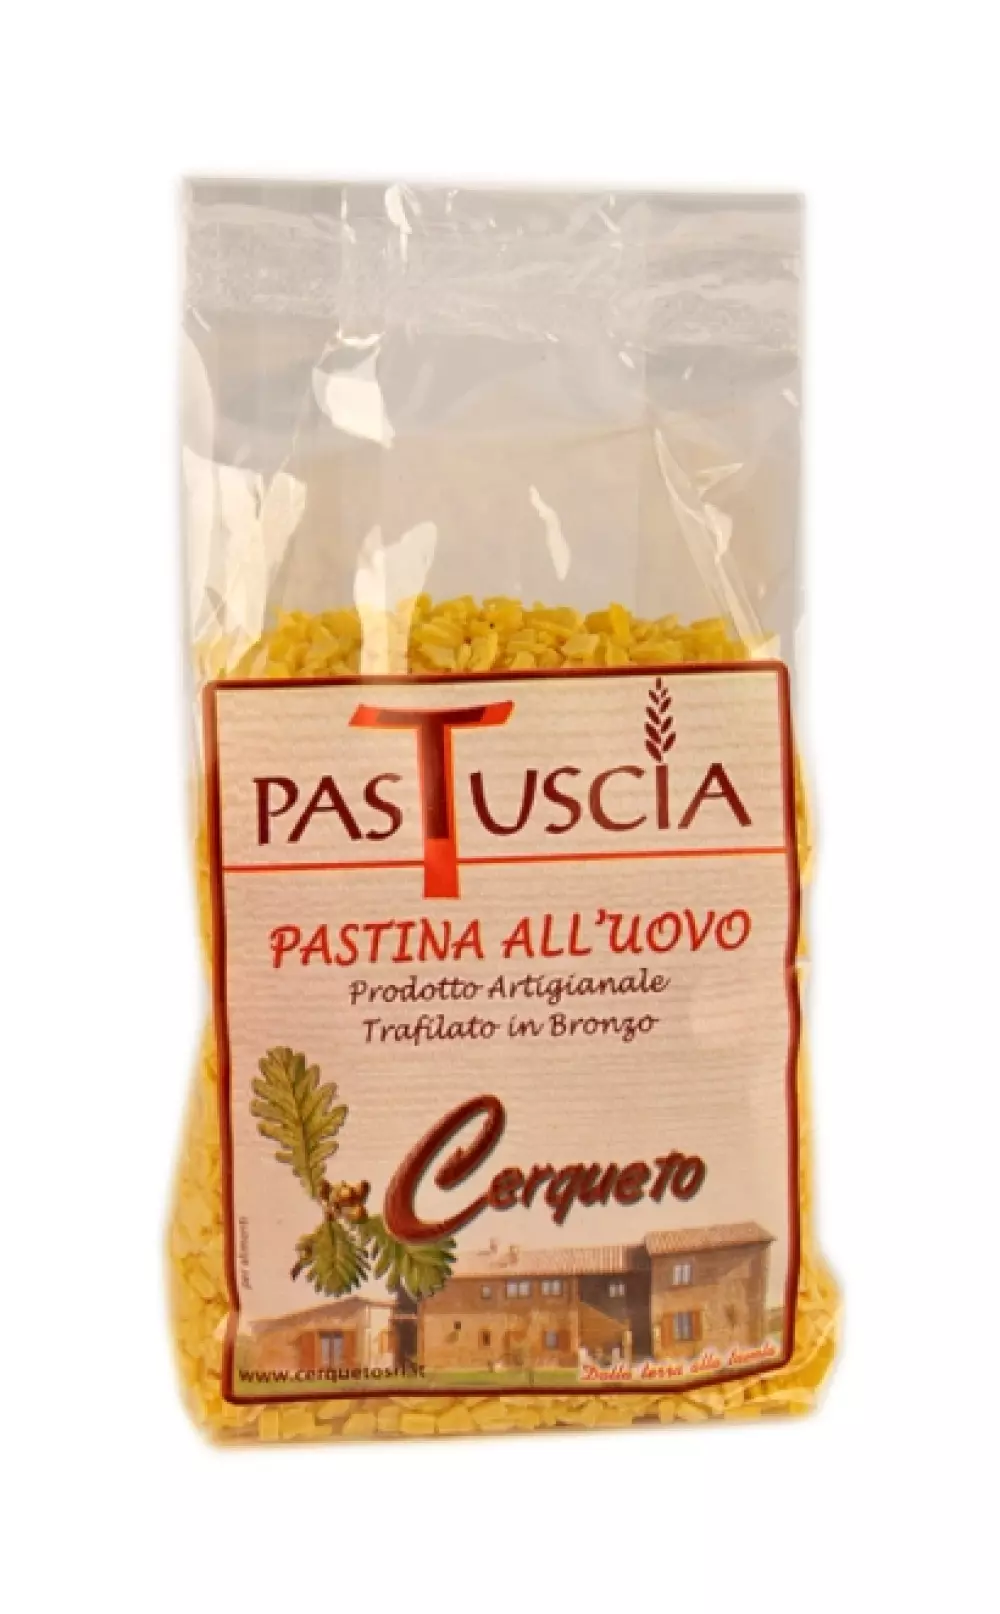 Grattata all`uovo 250g - Cerqueto Revet pasta med egg BUSTA GRATTATA PASTATUSCIA gr 250 0066 8032680714030 Pasta Med egg